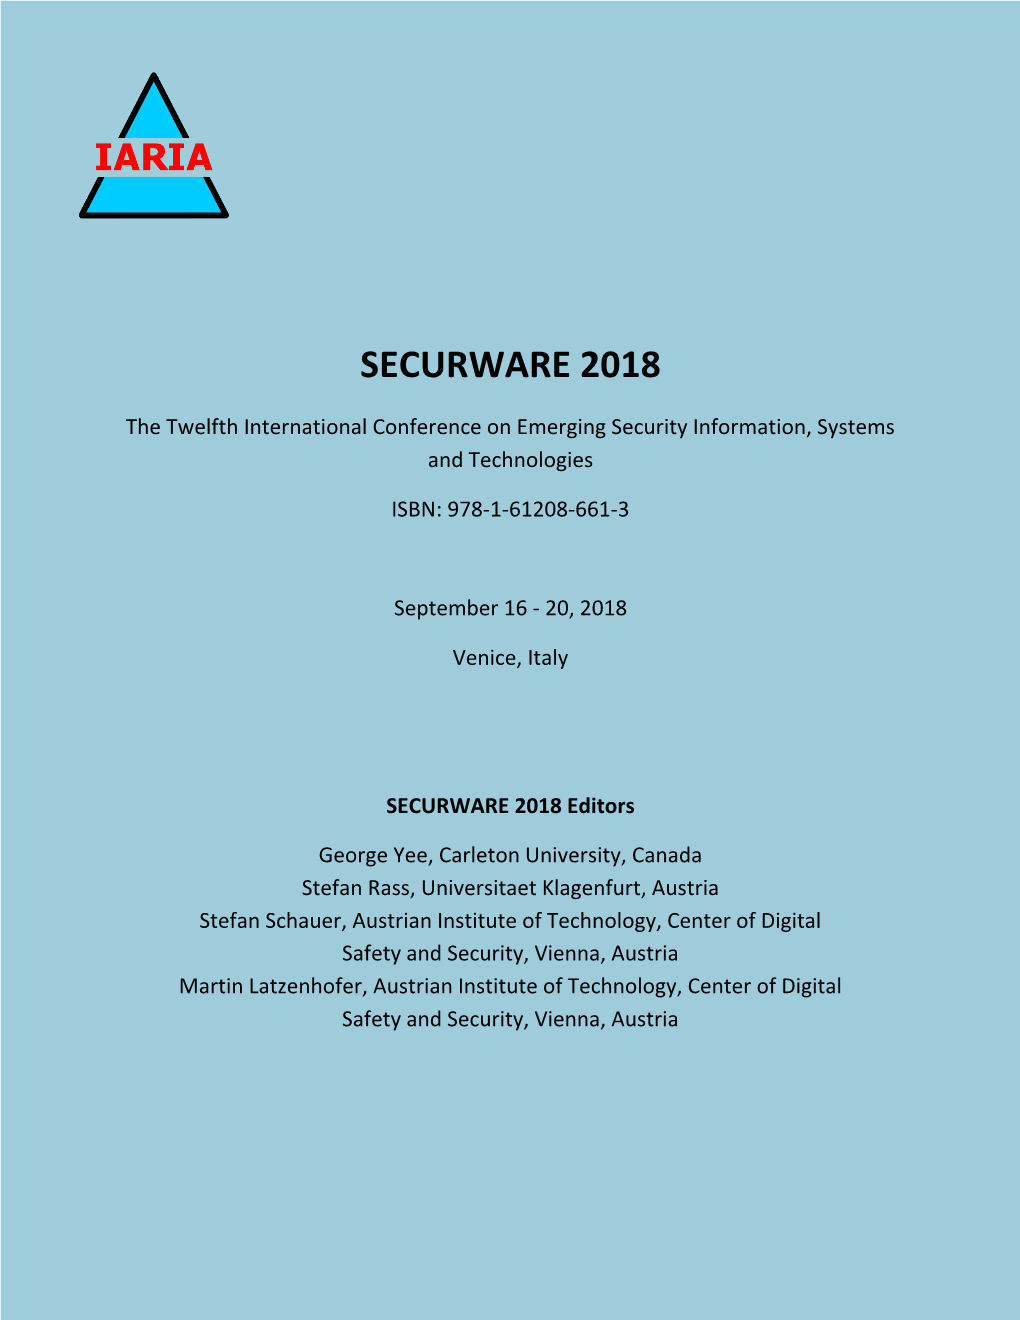 SECURWARE 2018 Proceedings